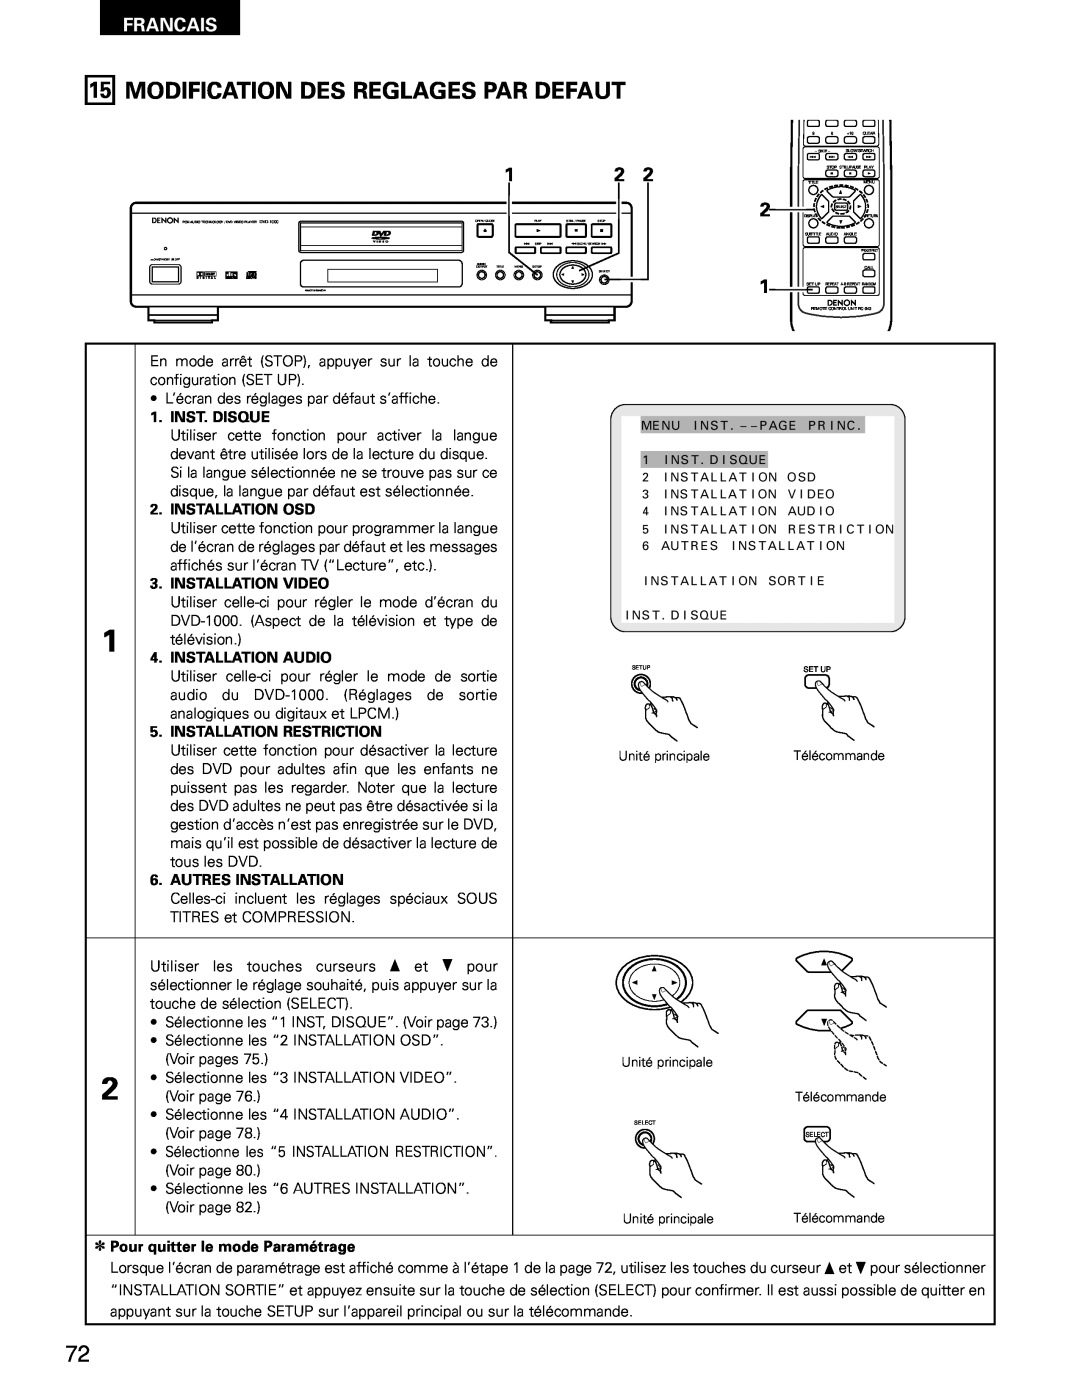 Denon DVD-1000 manual Modification Des Reglages Par Defaut, Francais, Inst. Disque, Installation Osd, Installation Video 